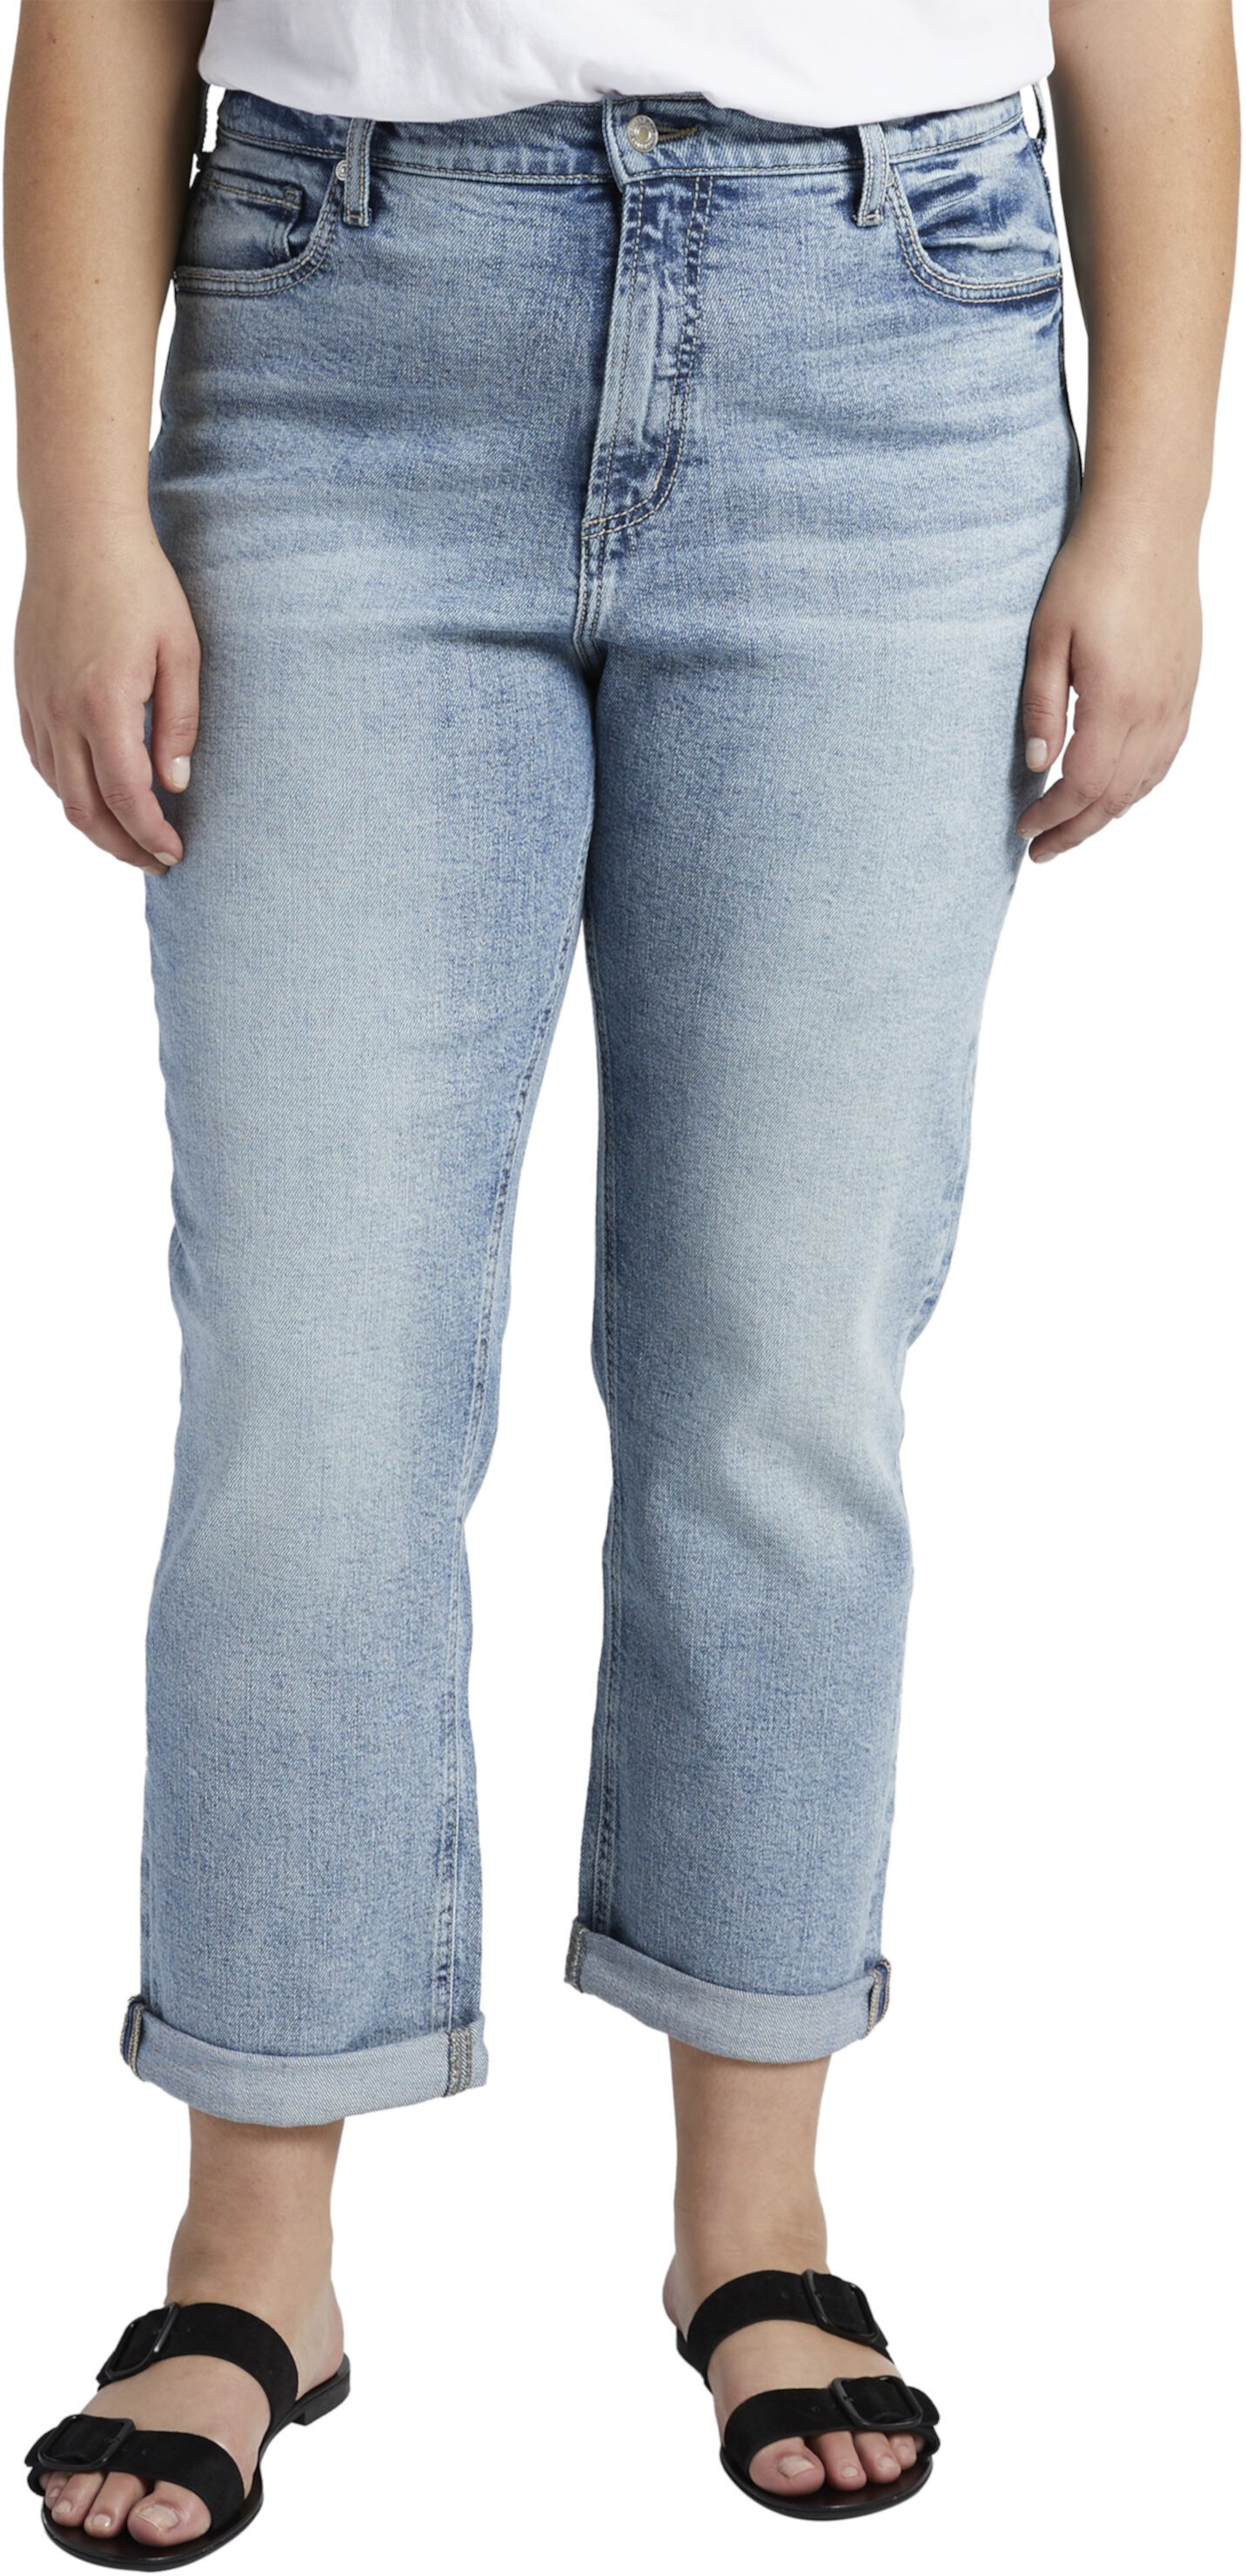 Узкие джинсы-бойфренды больших размеров с высокой посадкой W28355EOE224 в стиле бойфренд 90-х годов Silver Jeans Co.